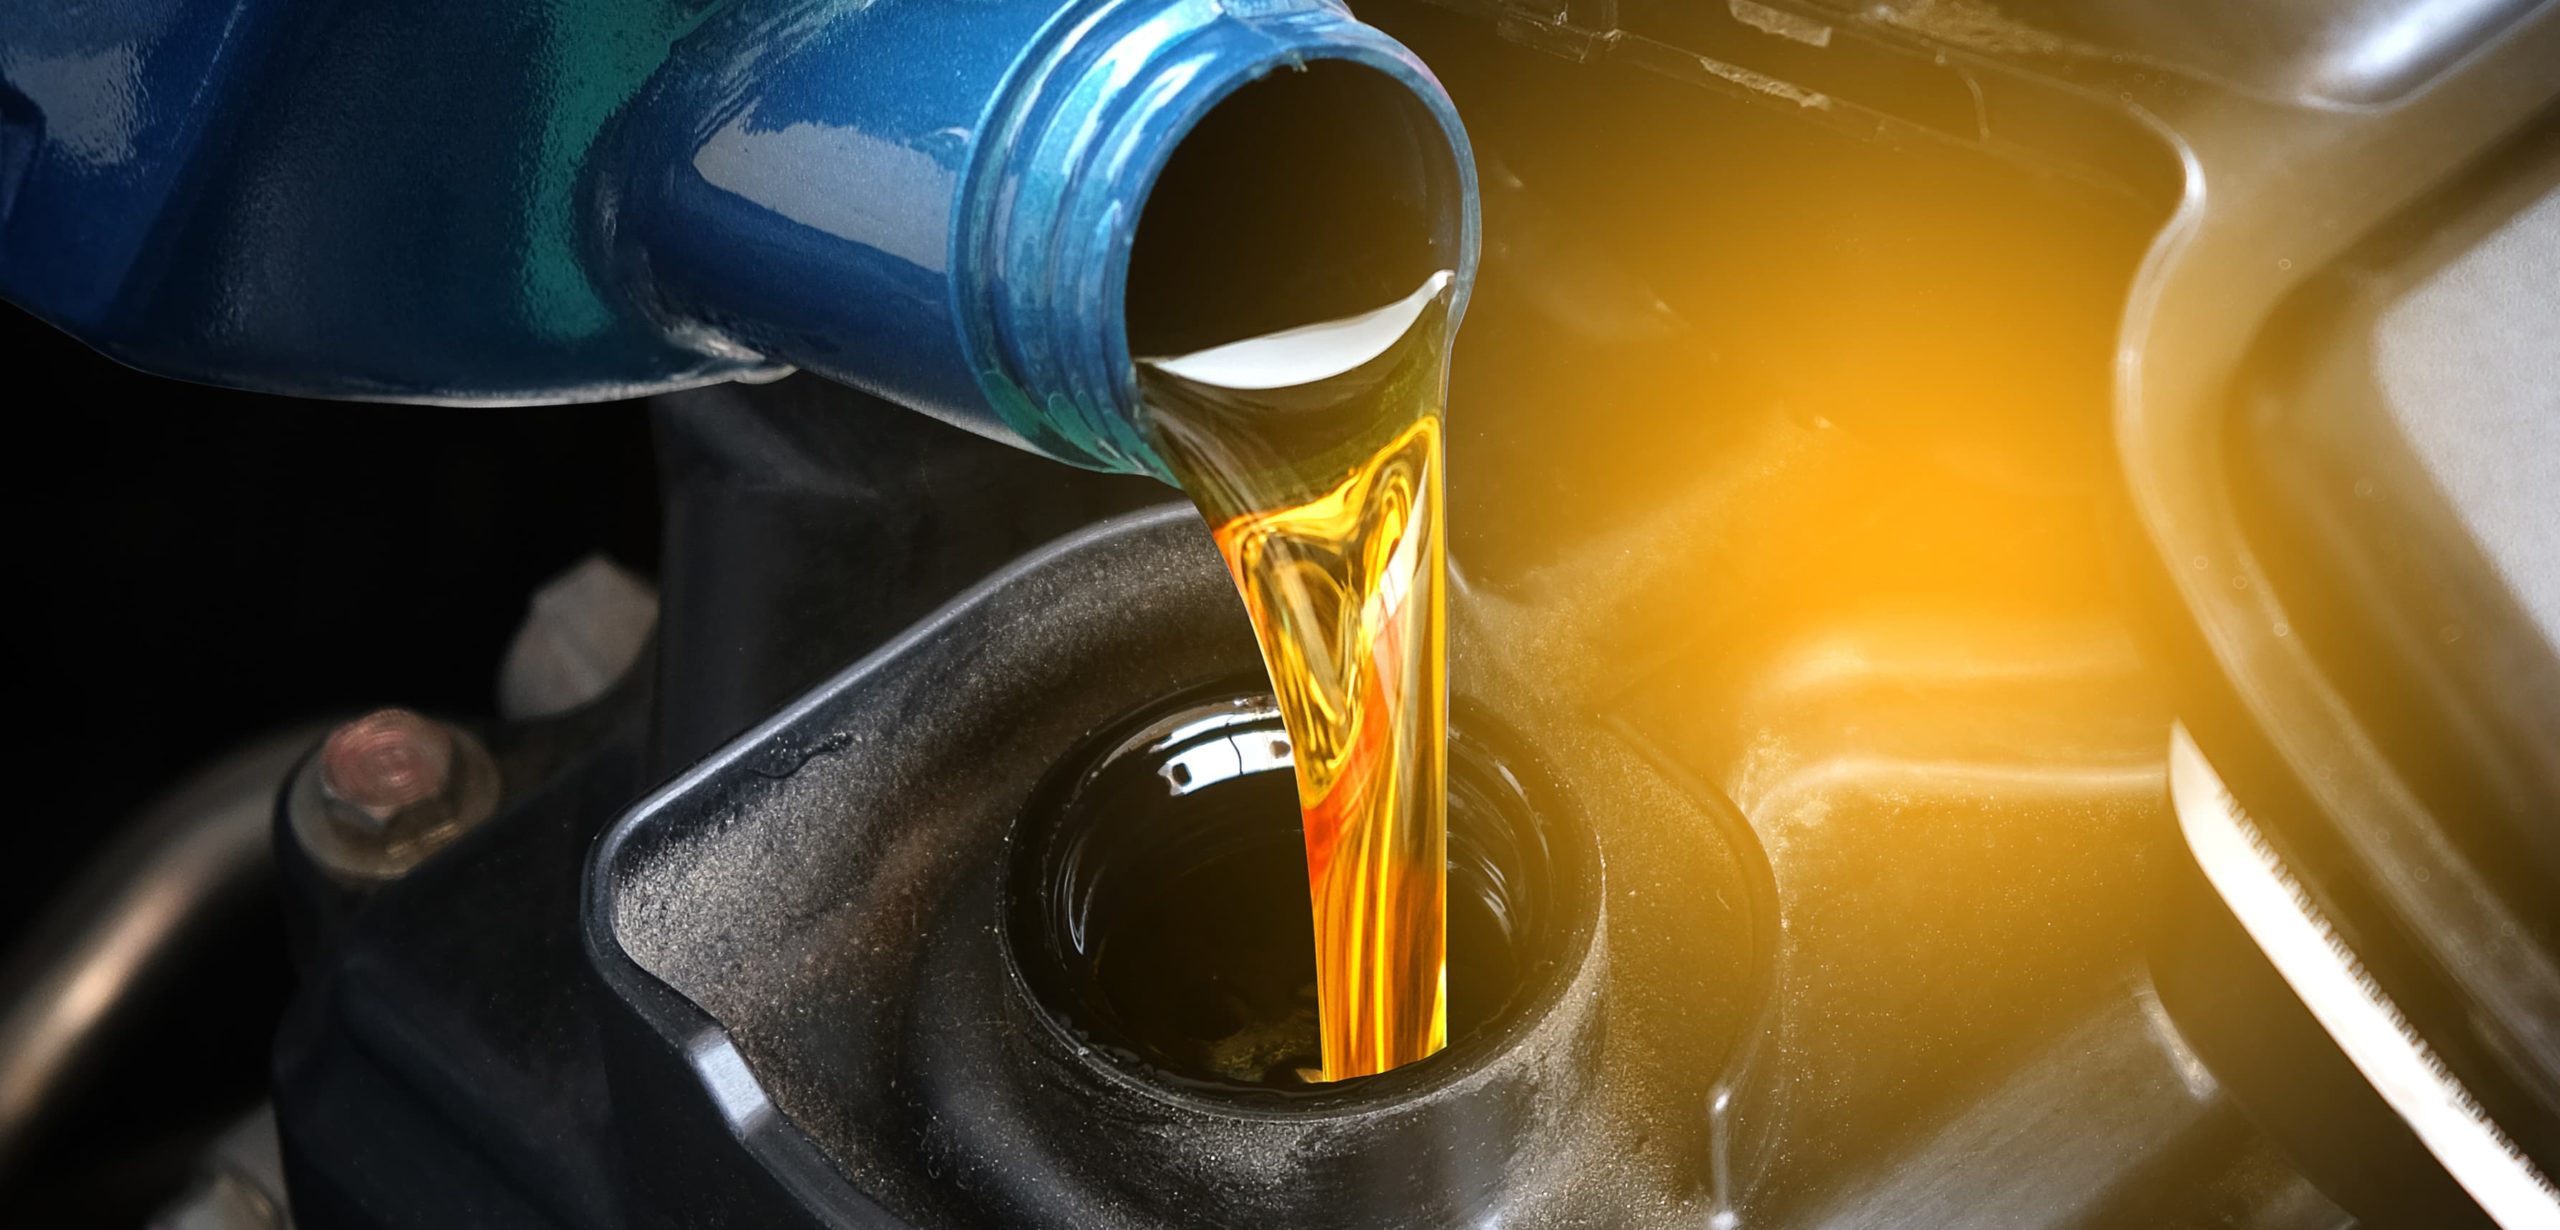 Cuánto cuesta cambiar el aceite y el filtro de aceite?